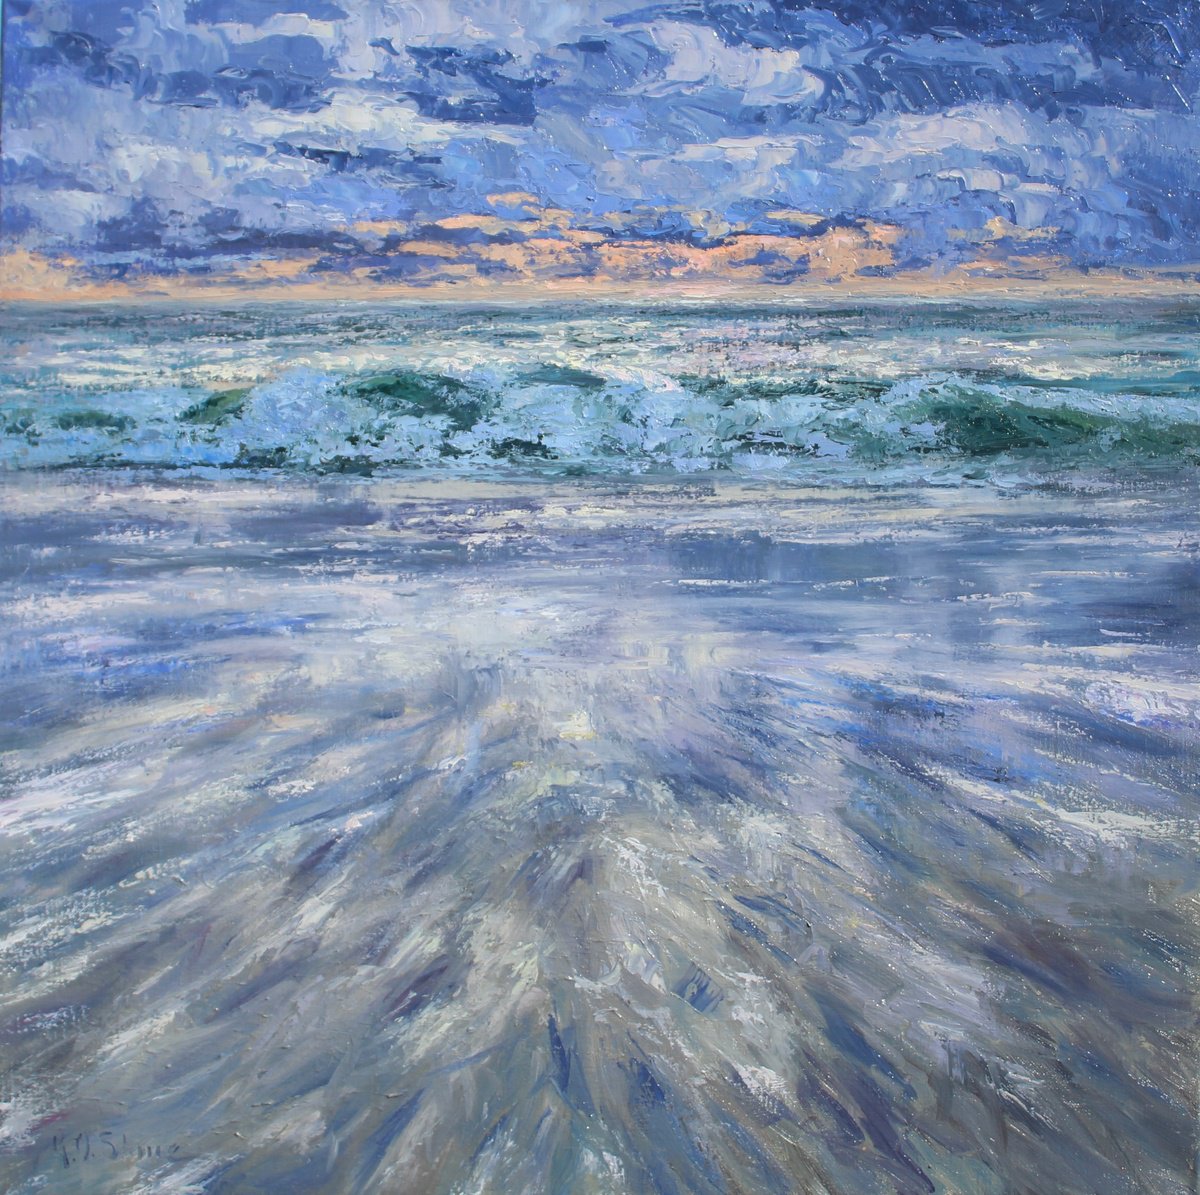 Seaside Dreams by Kristen Olson Stone